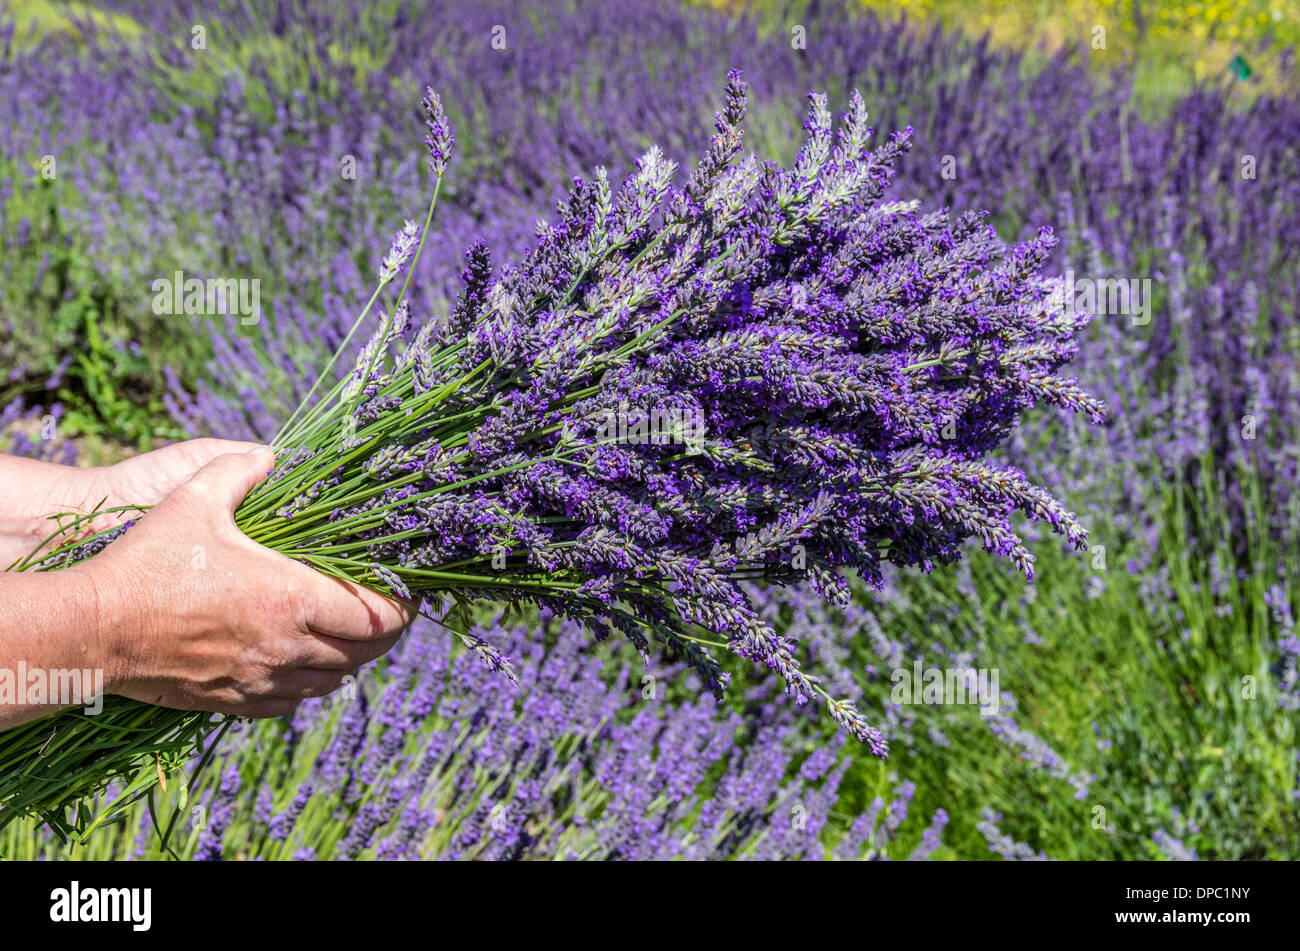 Blume-Erntemaschine hält ein Bündel von frischem Lavendel Blumen auf einer Lavendelfarm.  Dundee, Oregon, USA Stockfoto